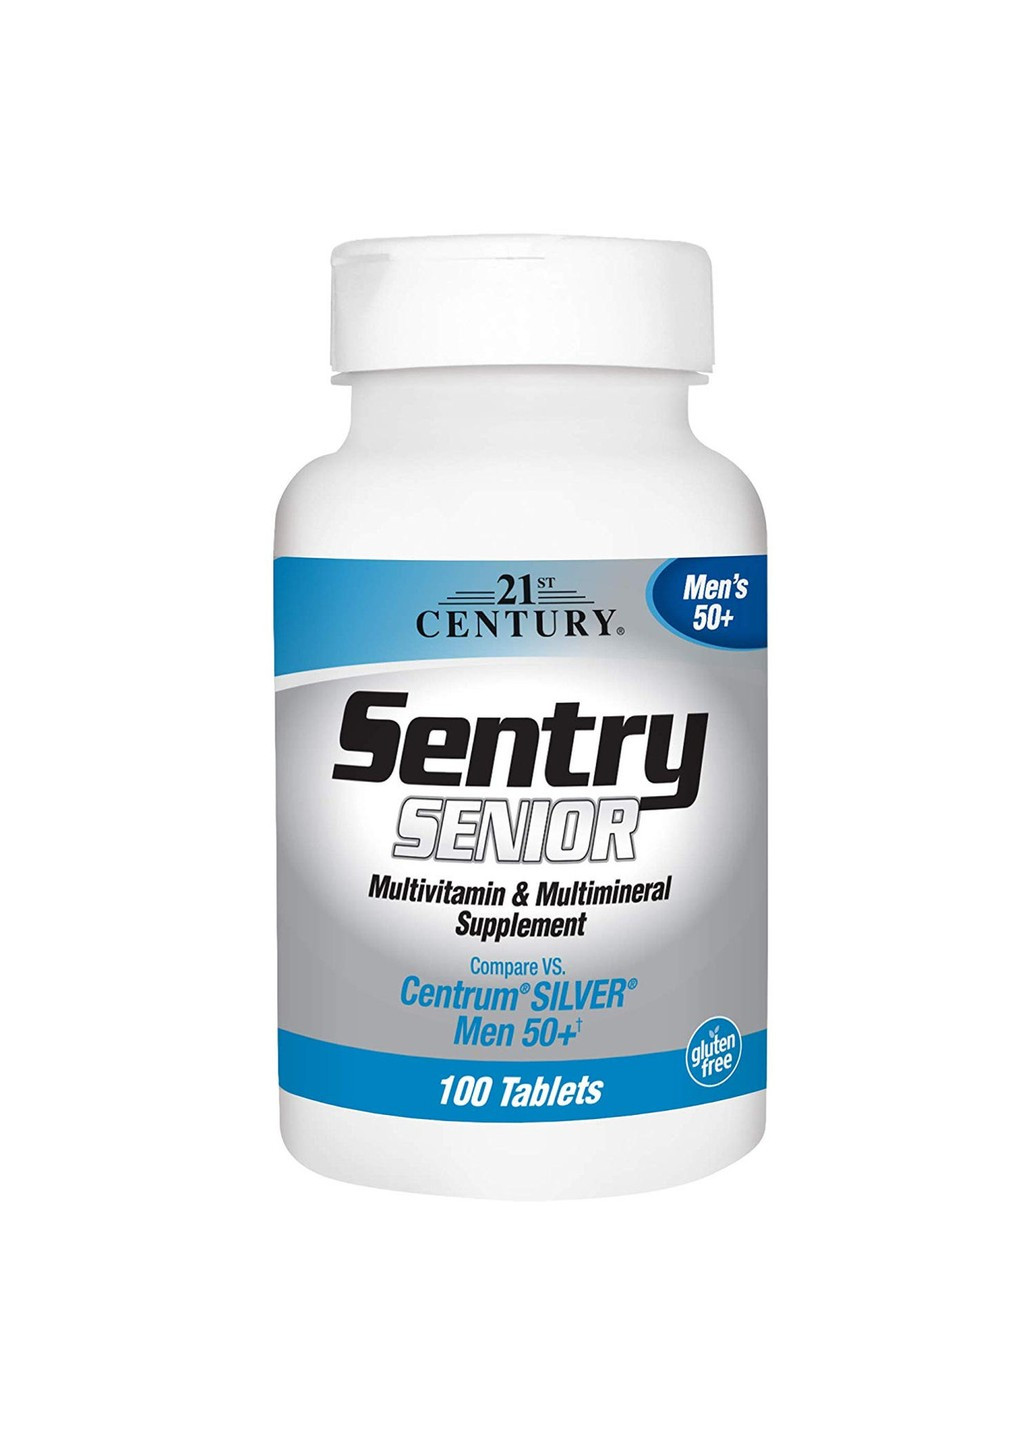 Витамины для мужчин Sentry Senior Men`s 50+ (100 таб) 21 век центури 21st Century (255410173)